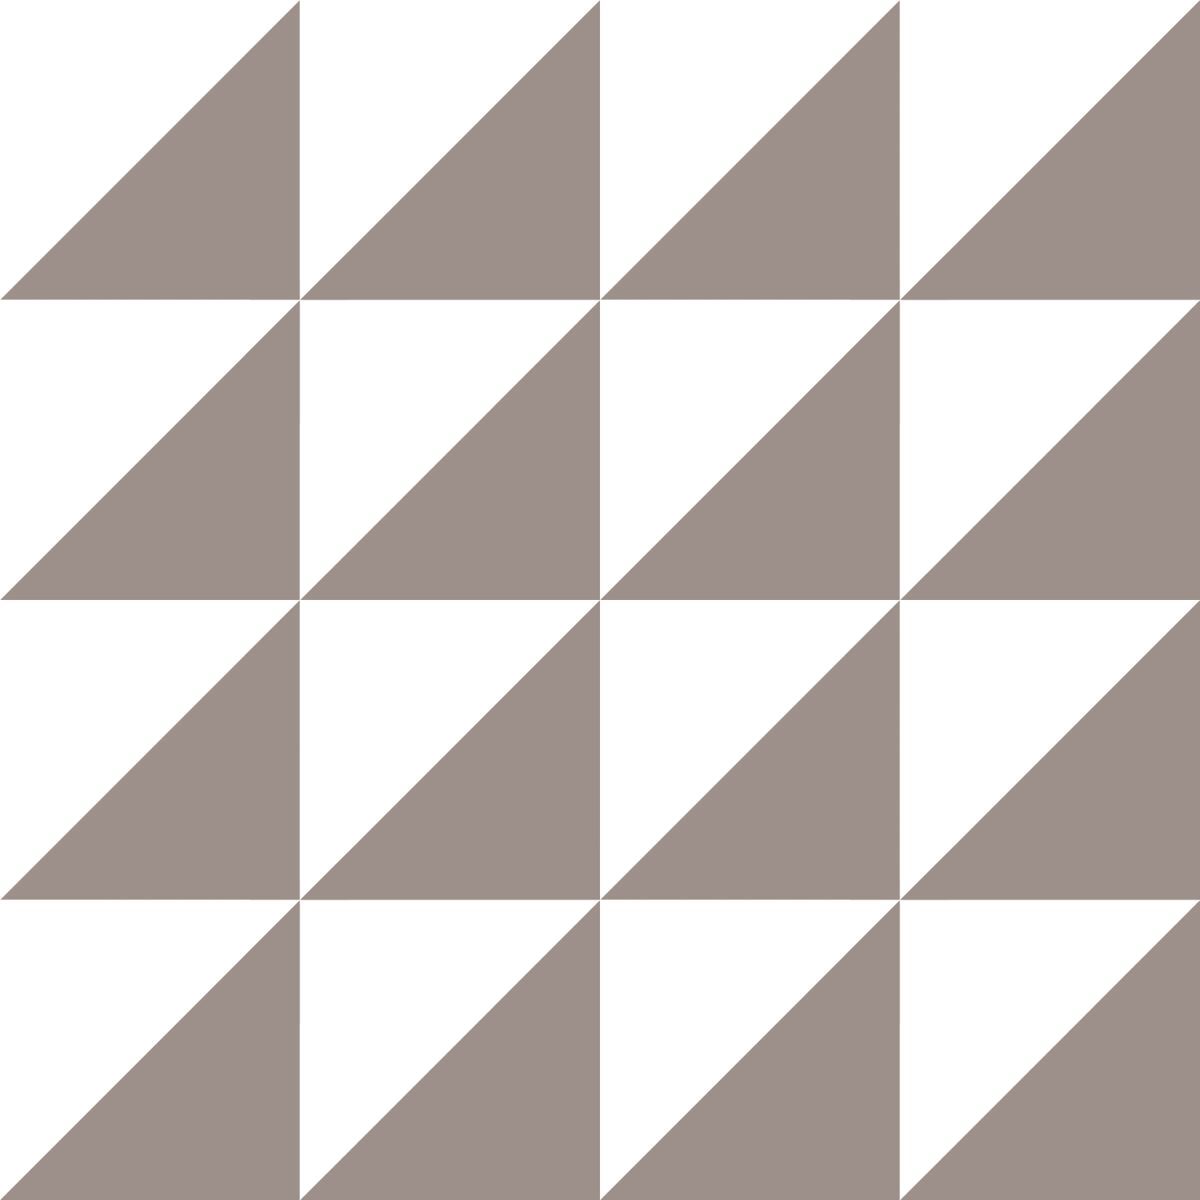 VitrA Feinsteinzeug 15x15 Retromix Serie nicht Rektifiziert,  Boden-Wandfliese, Schwarz/Weiß